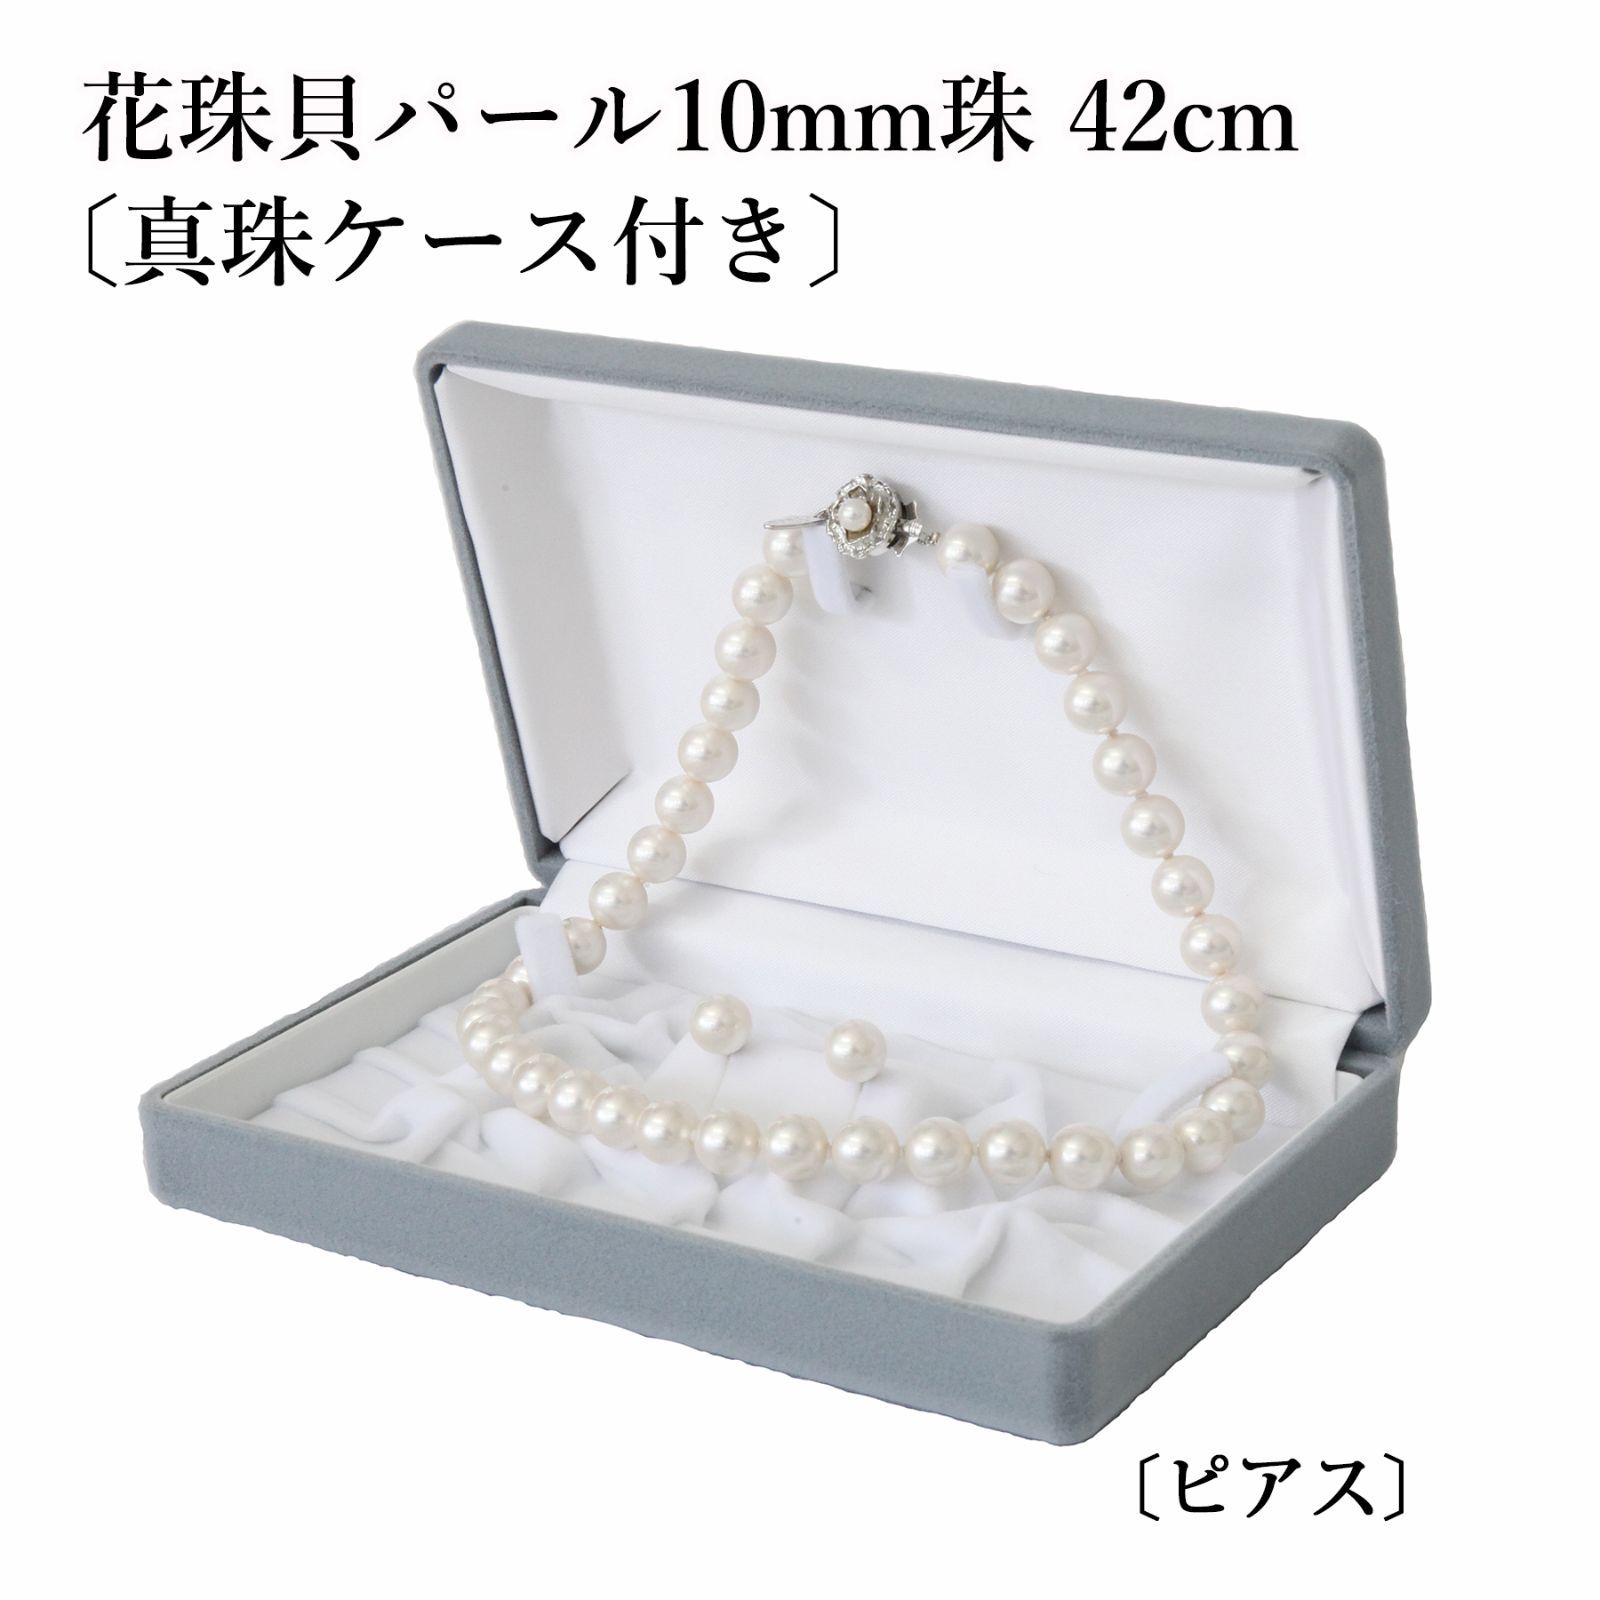 あなたと私の宝石箱] 真珠ネックレス・イヤリング or ピアスセット